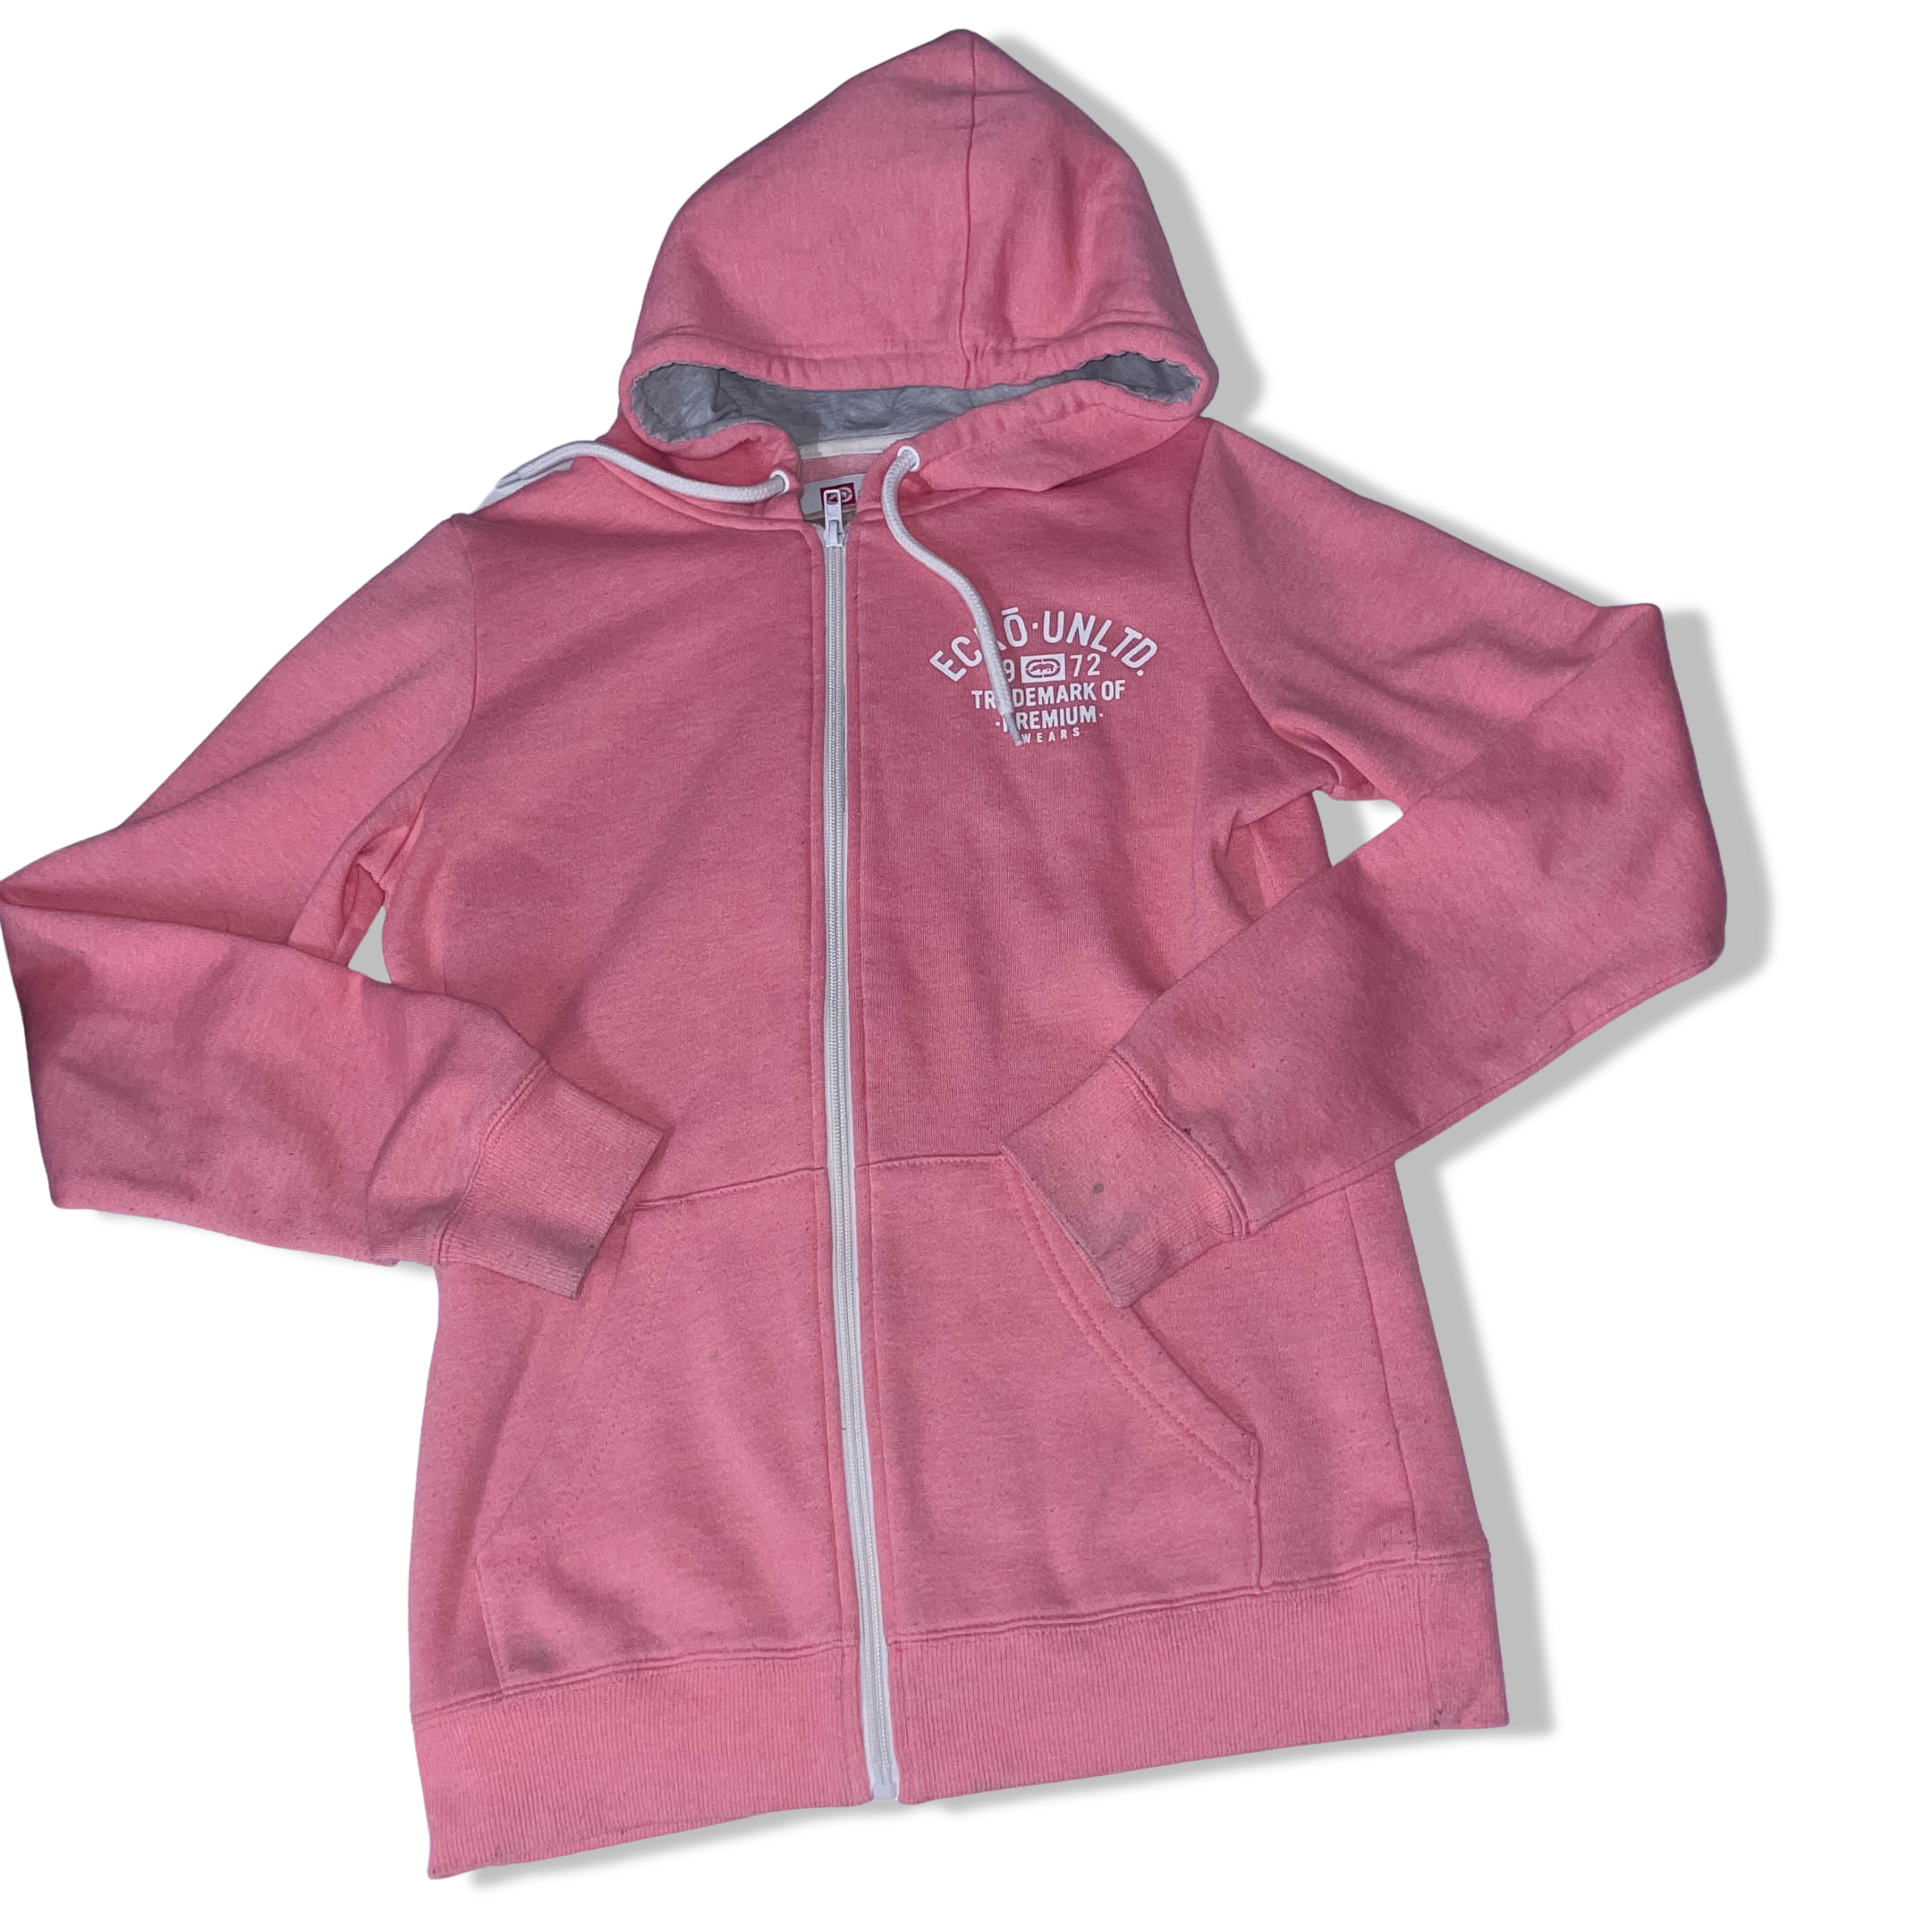 Vintage Ecko UNLTD. full zip up pink small hoodie